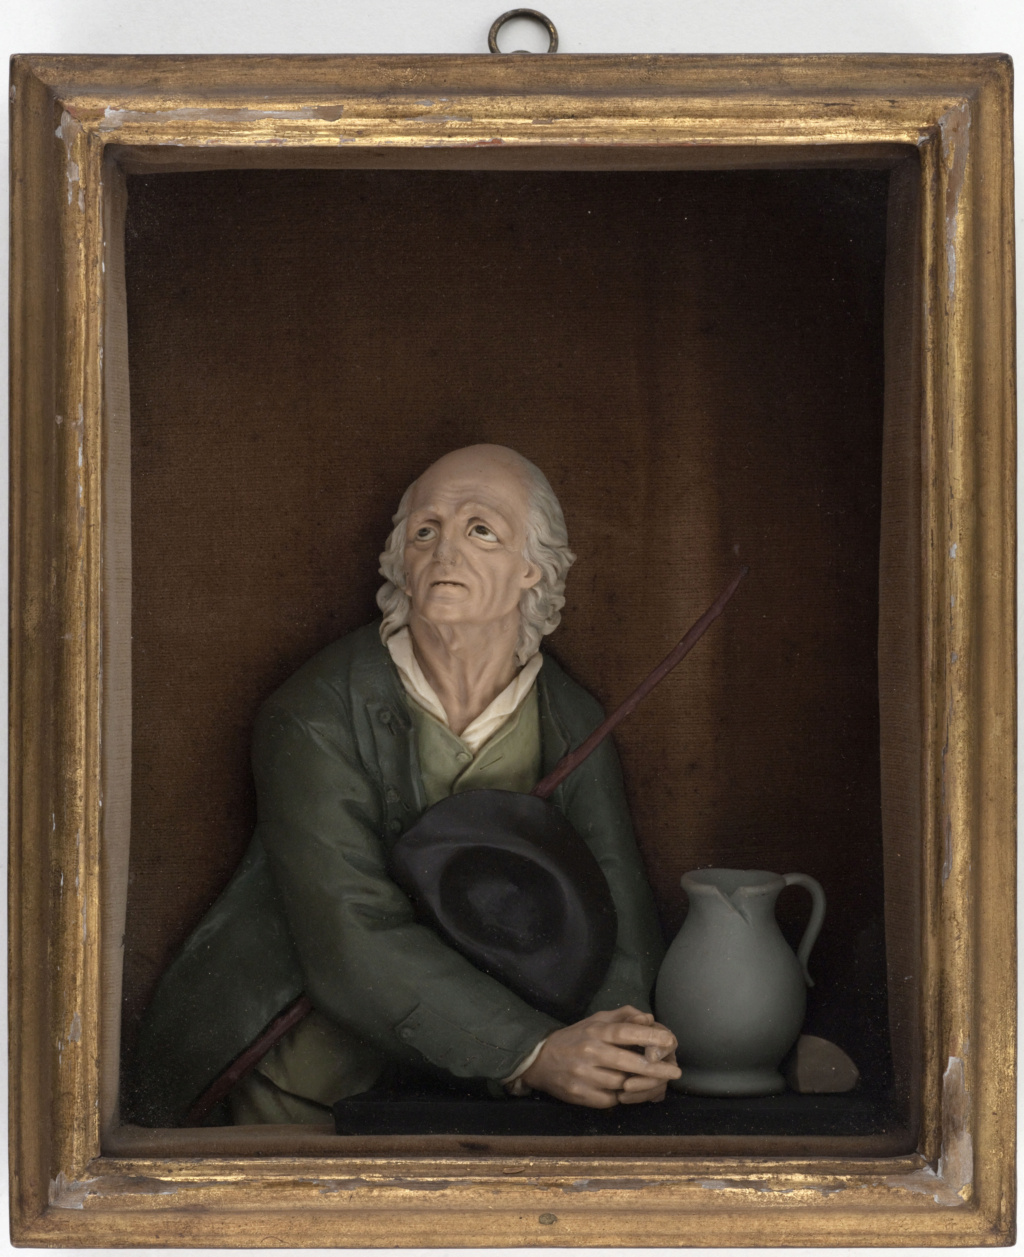 Les portraits et sculptures en cire au XVIIIe siècle (Céroplastie) Image_67